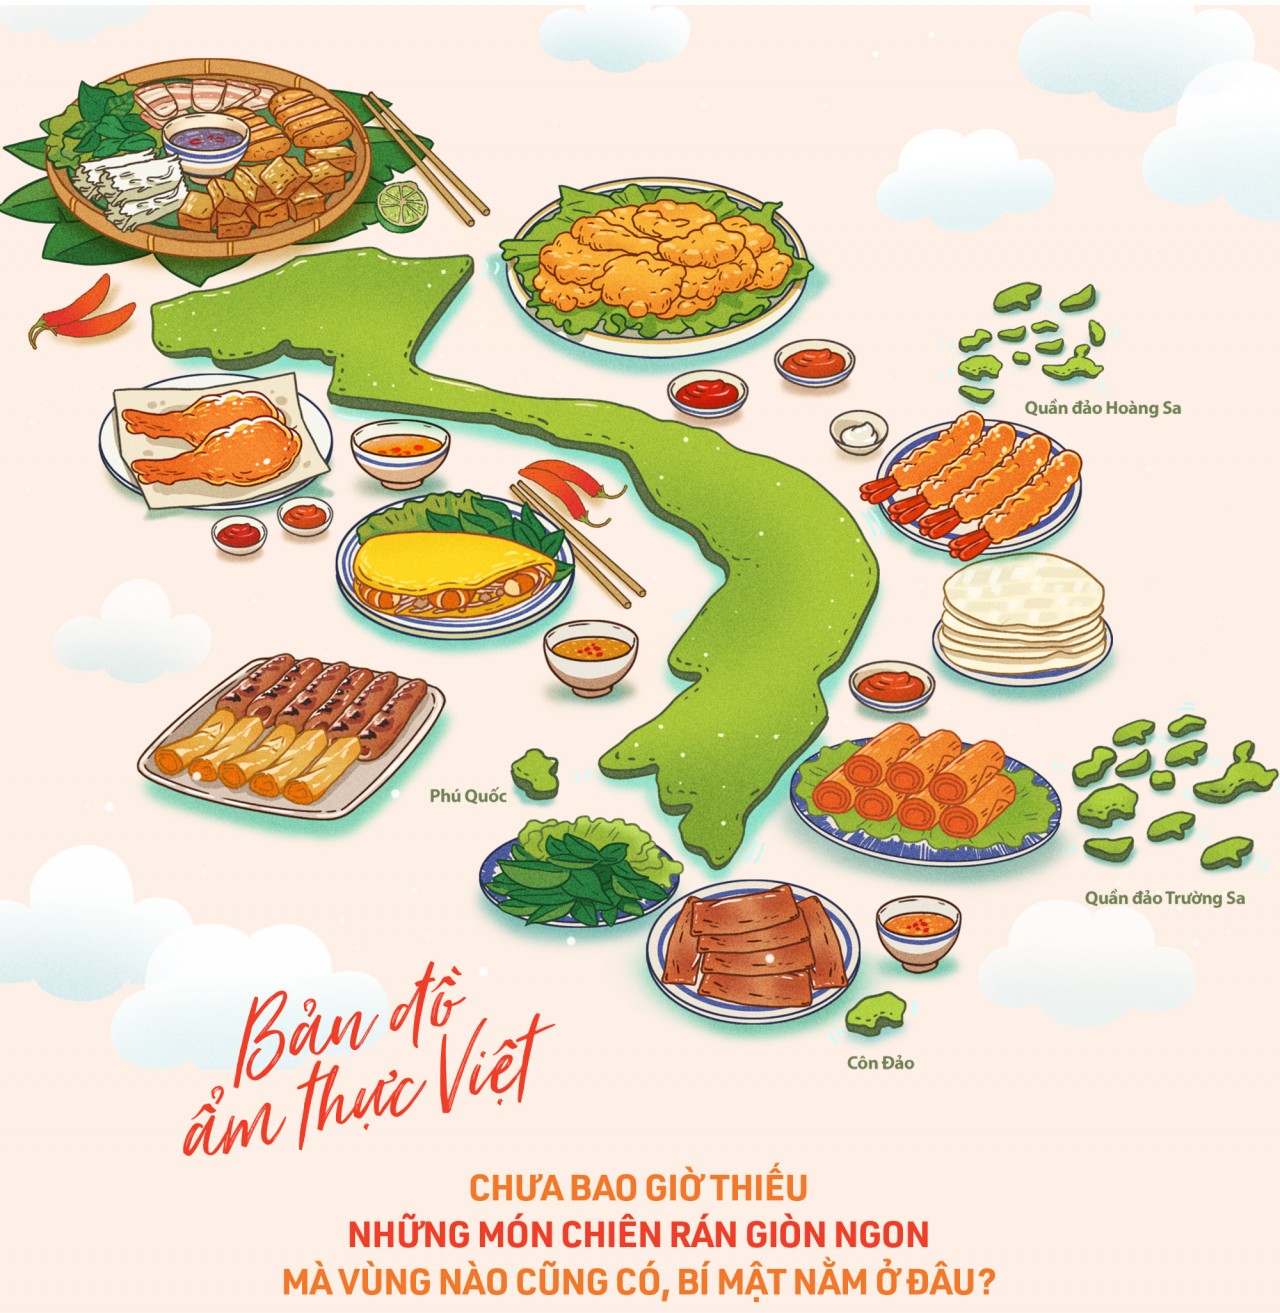 Ẩm thực Việt Nam kỷ lục sẽ đưa bạn đến với thế giới ẩm thực truyền thống và đa dạng của Việt Nam. Từ các món ăn đặc trưng của miền núi đến miền biển, với những hương vị và màu sắc độc đáo, bạn sẽ không thể cưỡng lại được sức hút của ẩm thực Việt Nam. Hãy xem hình ảnh liên quan để thấy được độ phong phú và tuyệt vời của nền ẩm thực Việt Nam.